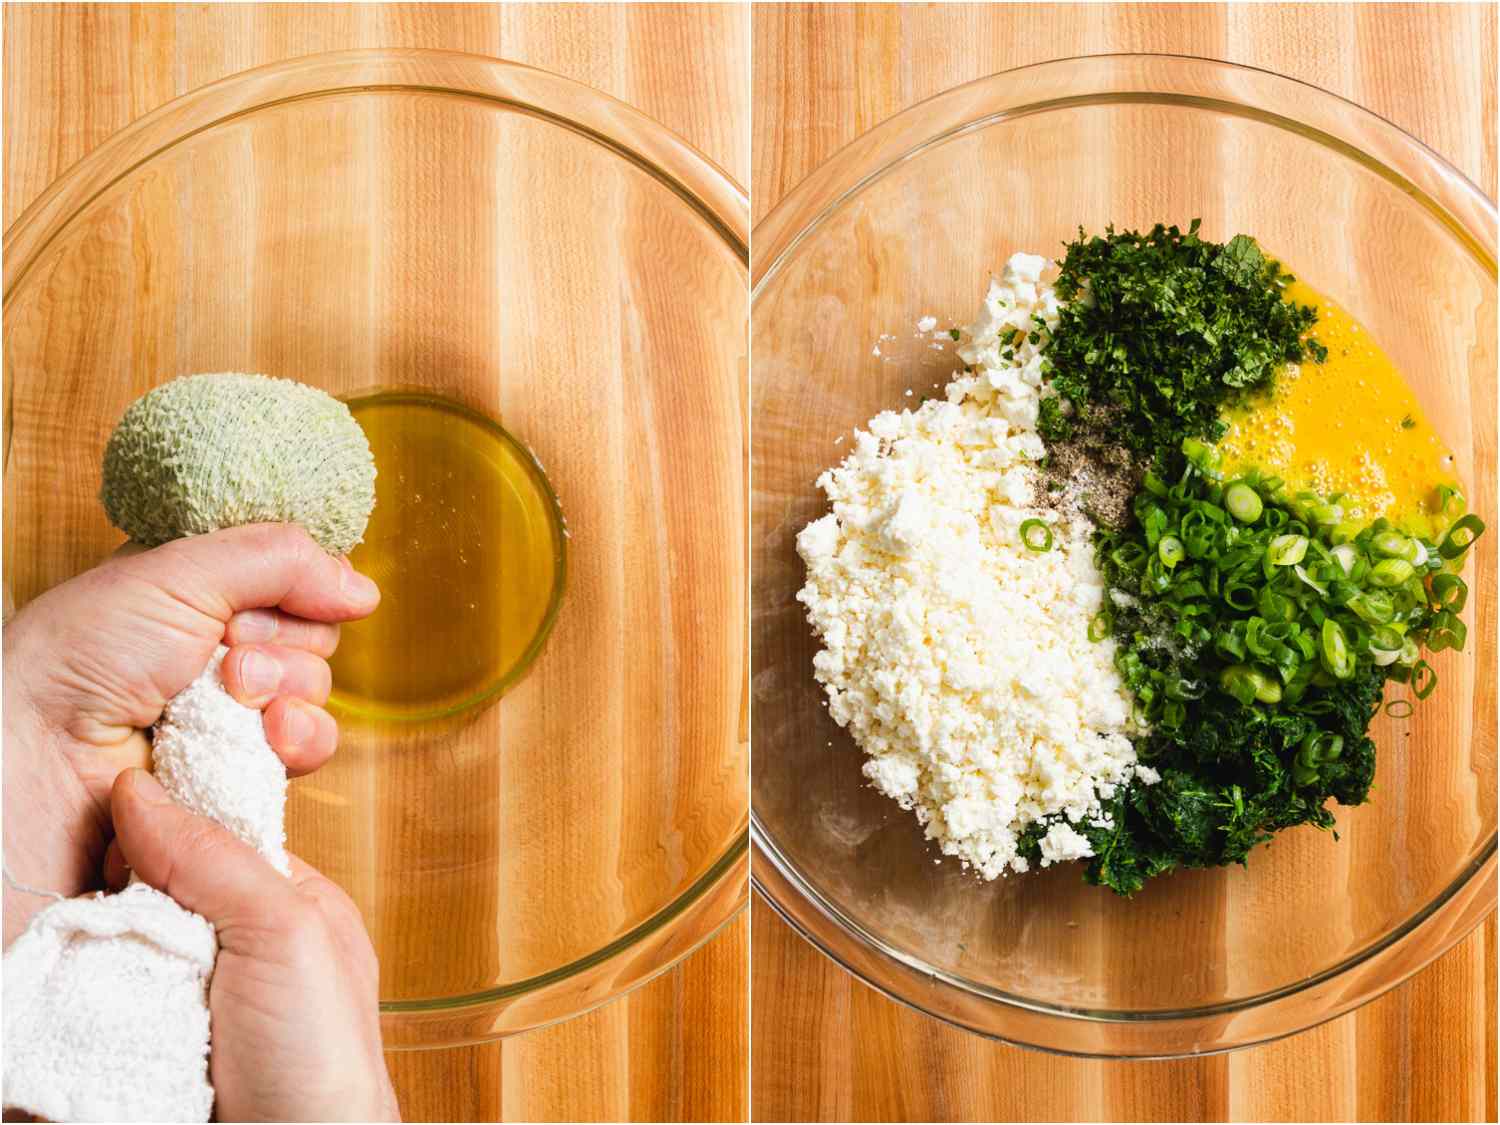 拼贴:用毛巾把煮熟的菠菜里的水挤出来;另一碗，里面有奶酪、鸡蛋、葱花和切碎的菠菜gydF4y2Ba